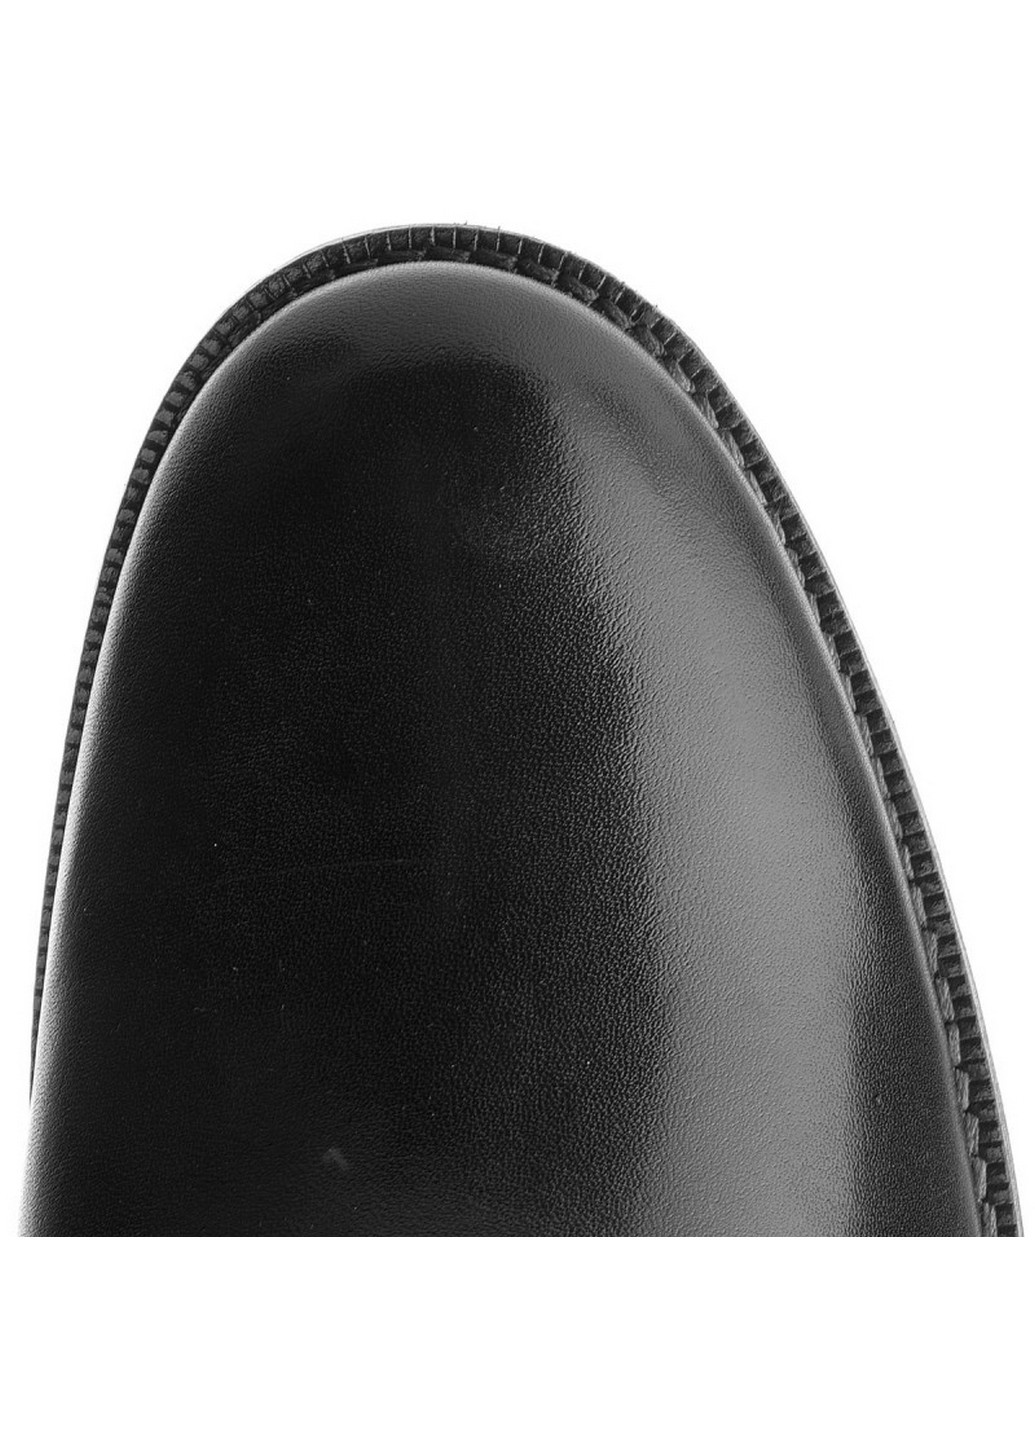 Черные осенние черевики lasocki for men mi07-c322-360-16 Lasocki for men